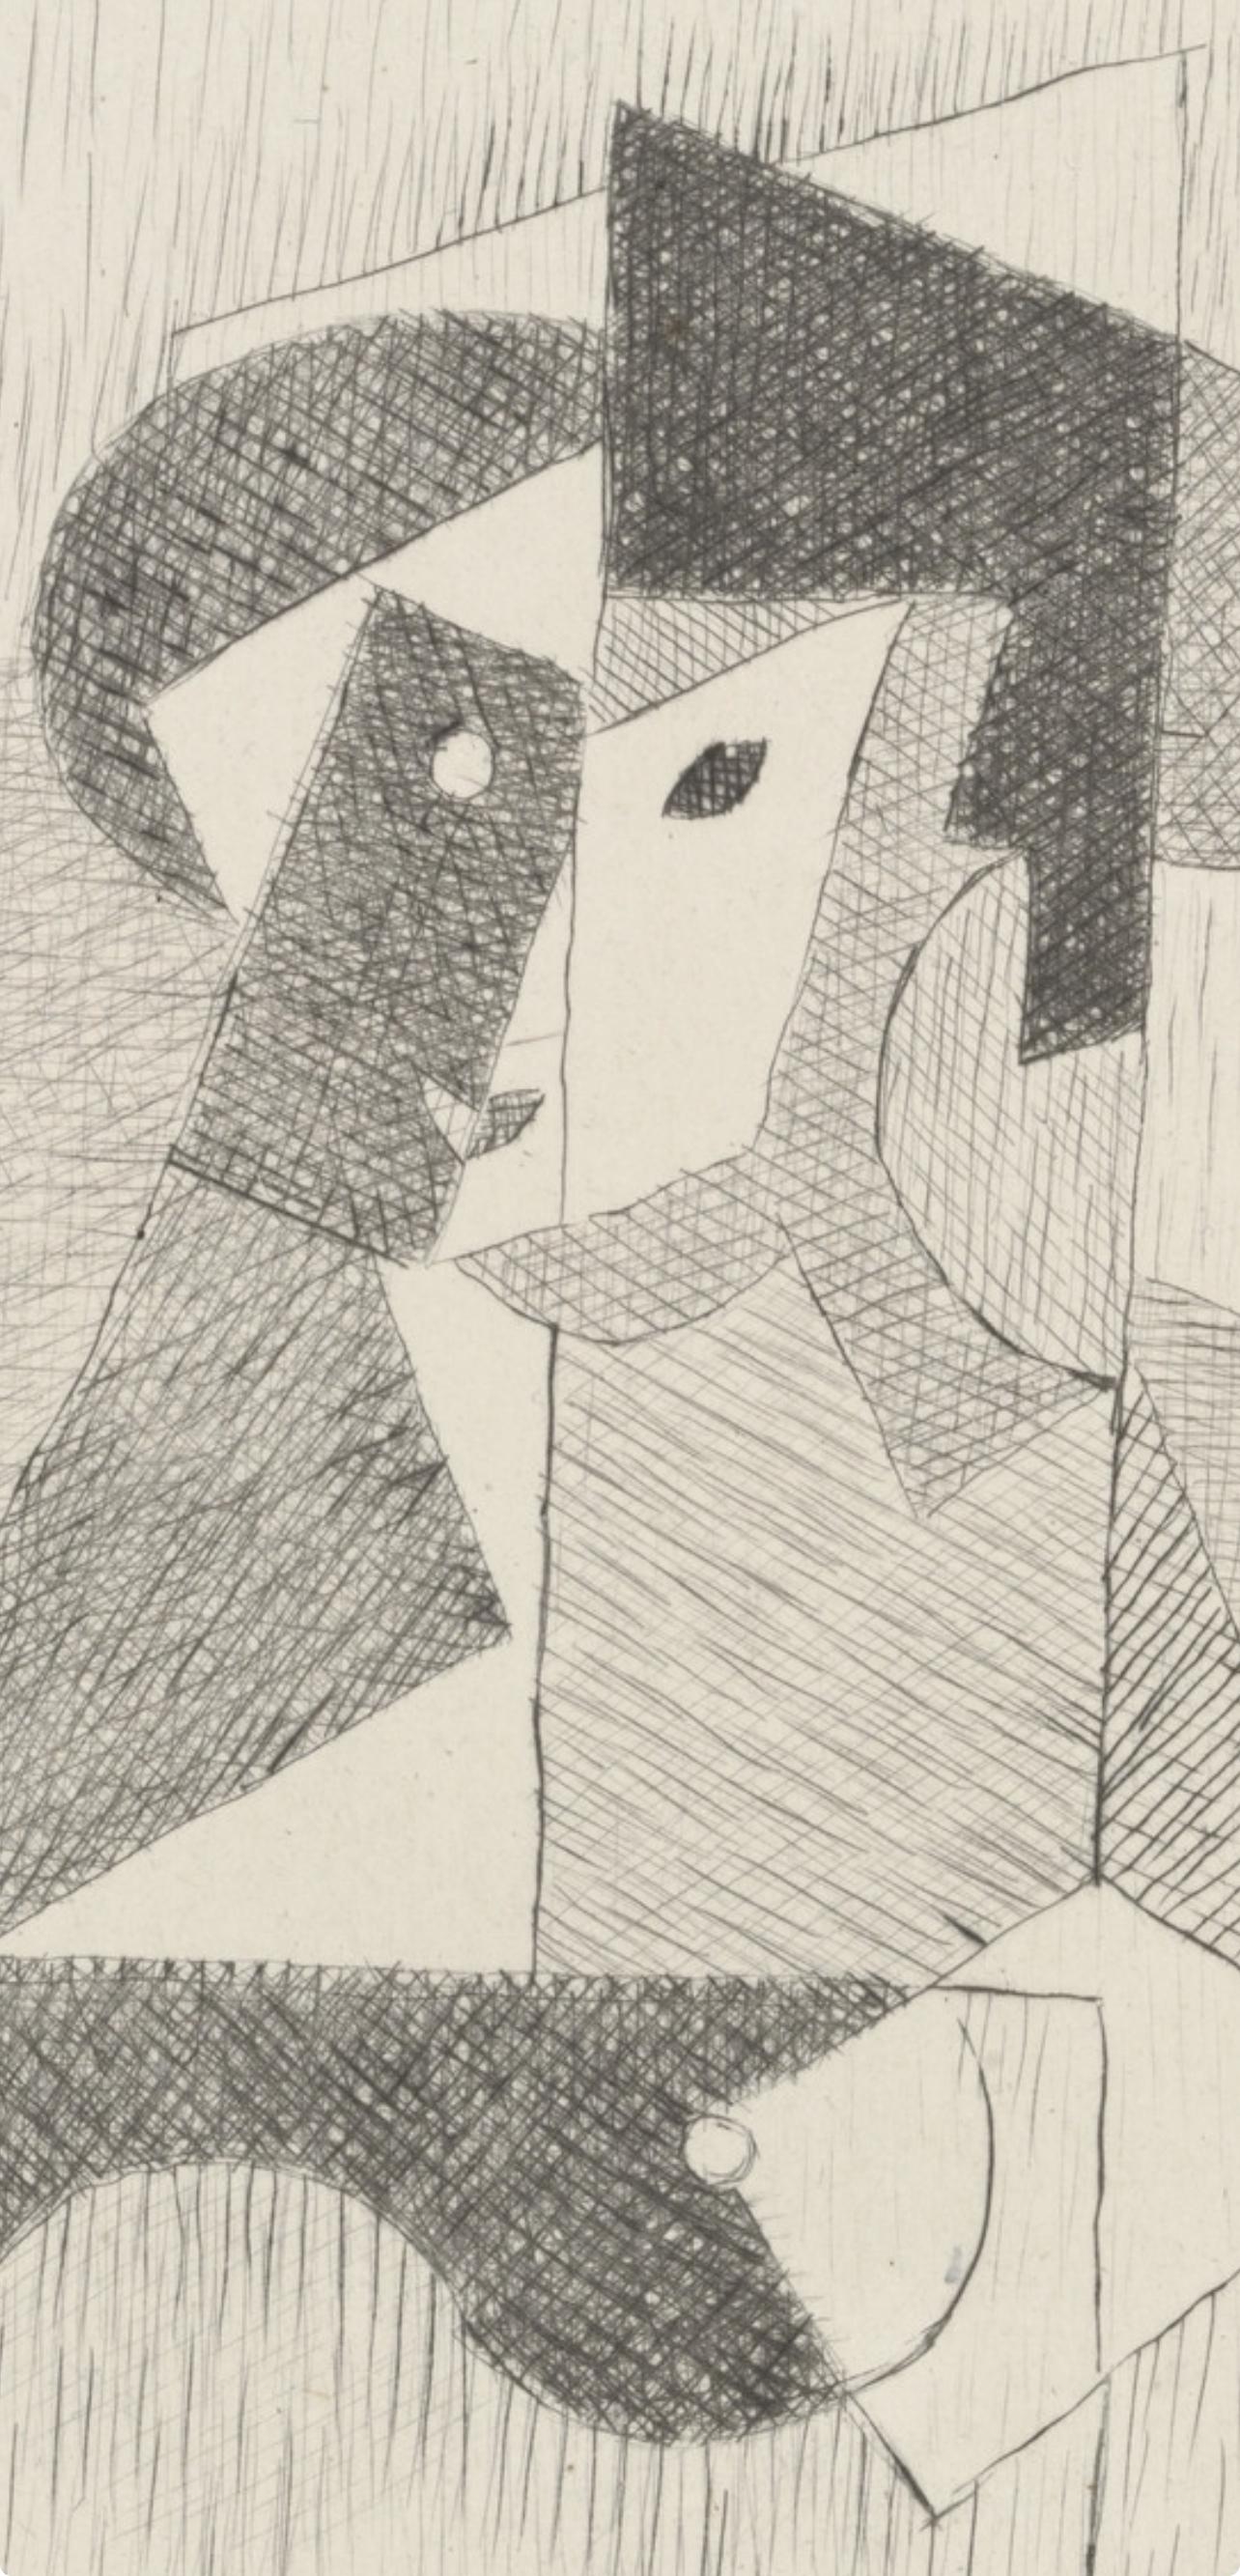 Metzinger, Femme à sa Toilette (Metzinger, AM-18-013), Du cubisme (after) - Print by Jean Metzinger